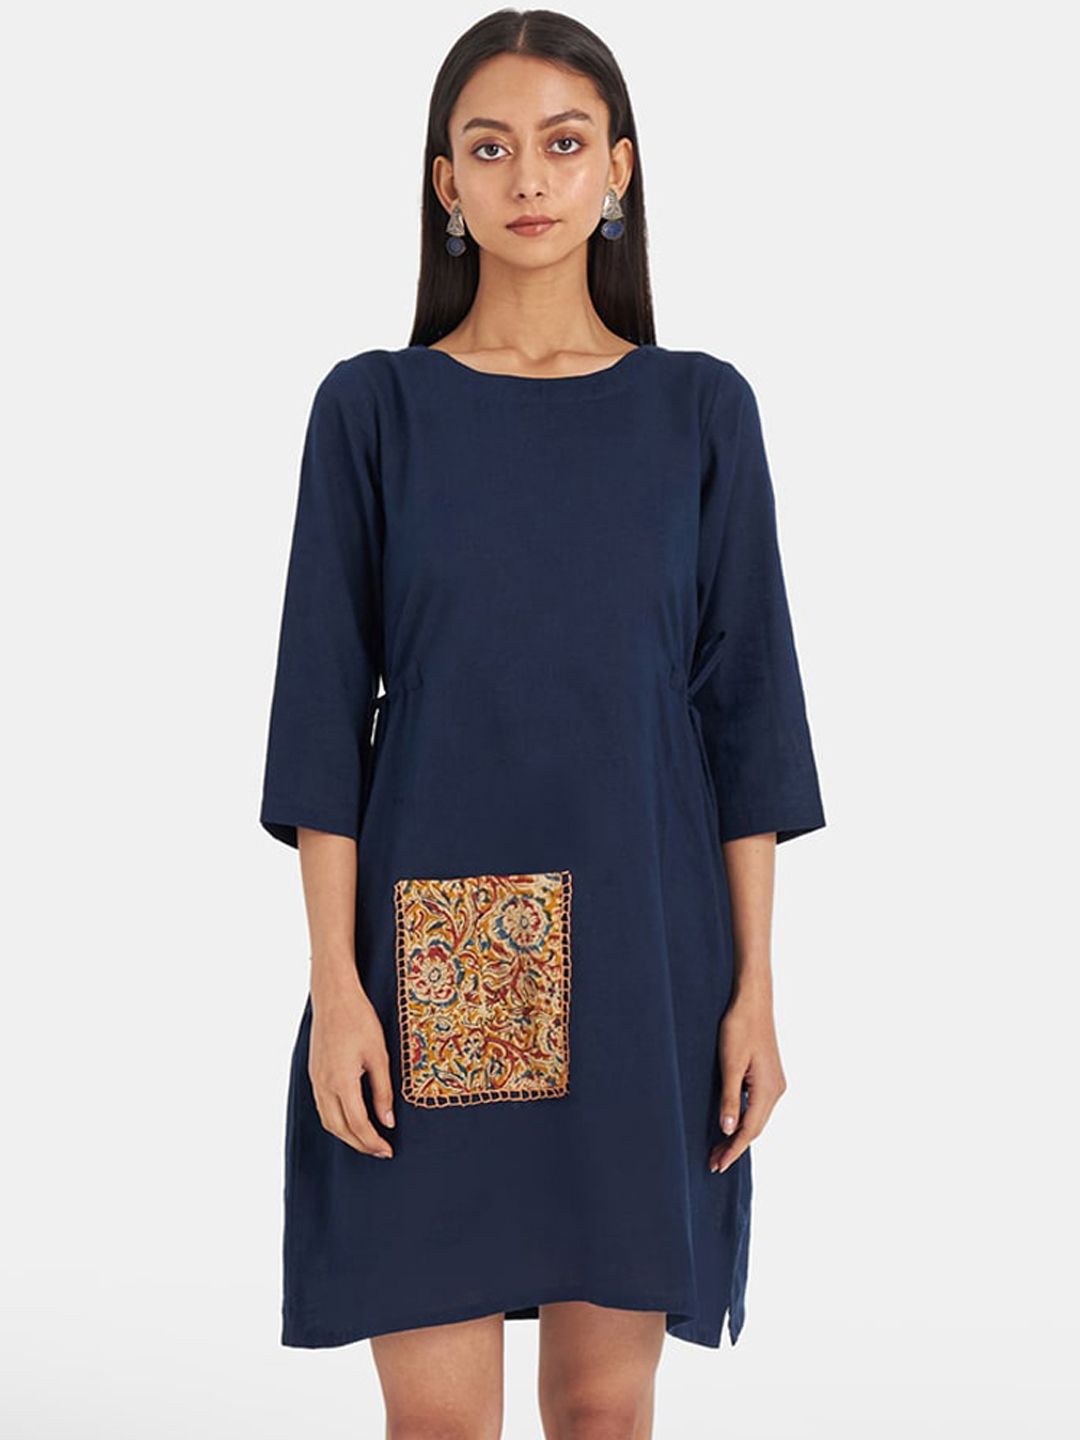 Suta Blue A-Line Dress Price in India